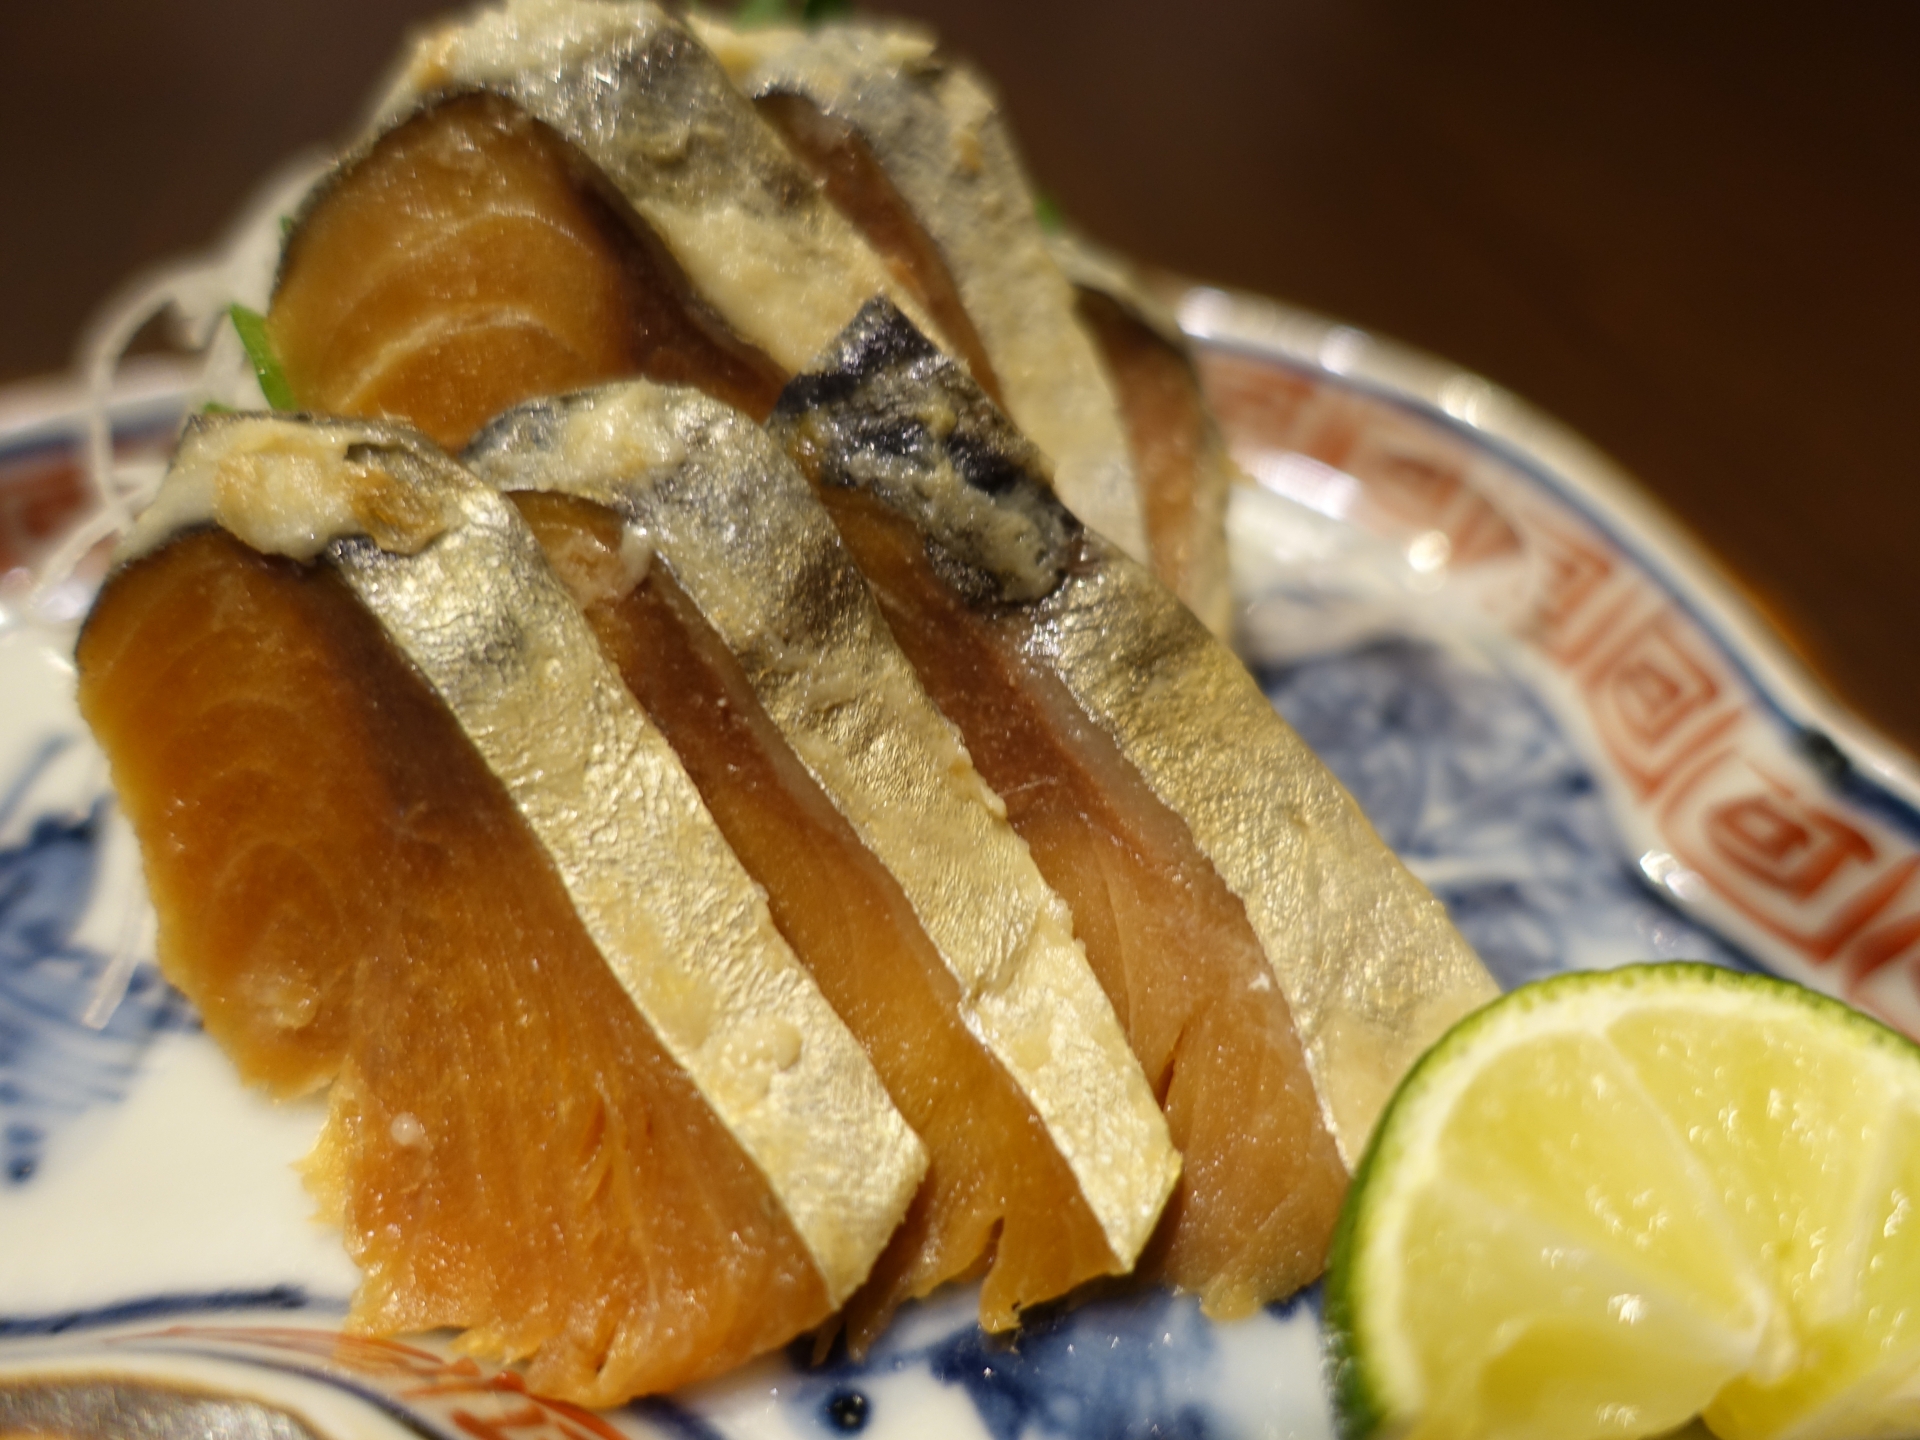 福井県民食の魚のぬか漬け へしこ はご飯にあう 老舗メーカー越前水産田村屋 さばのへしこ 取り寄せ方法と食べ方とは ケンミンショー きになるメモブログ